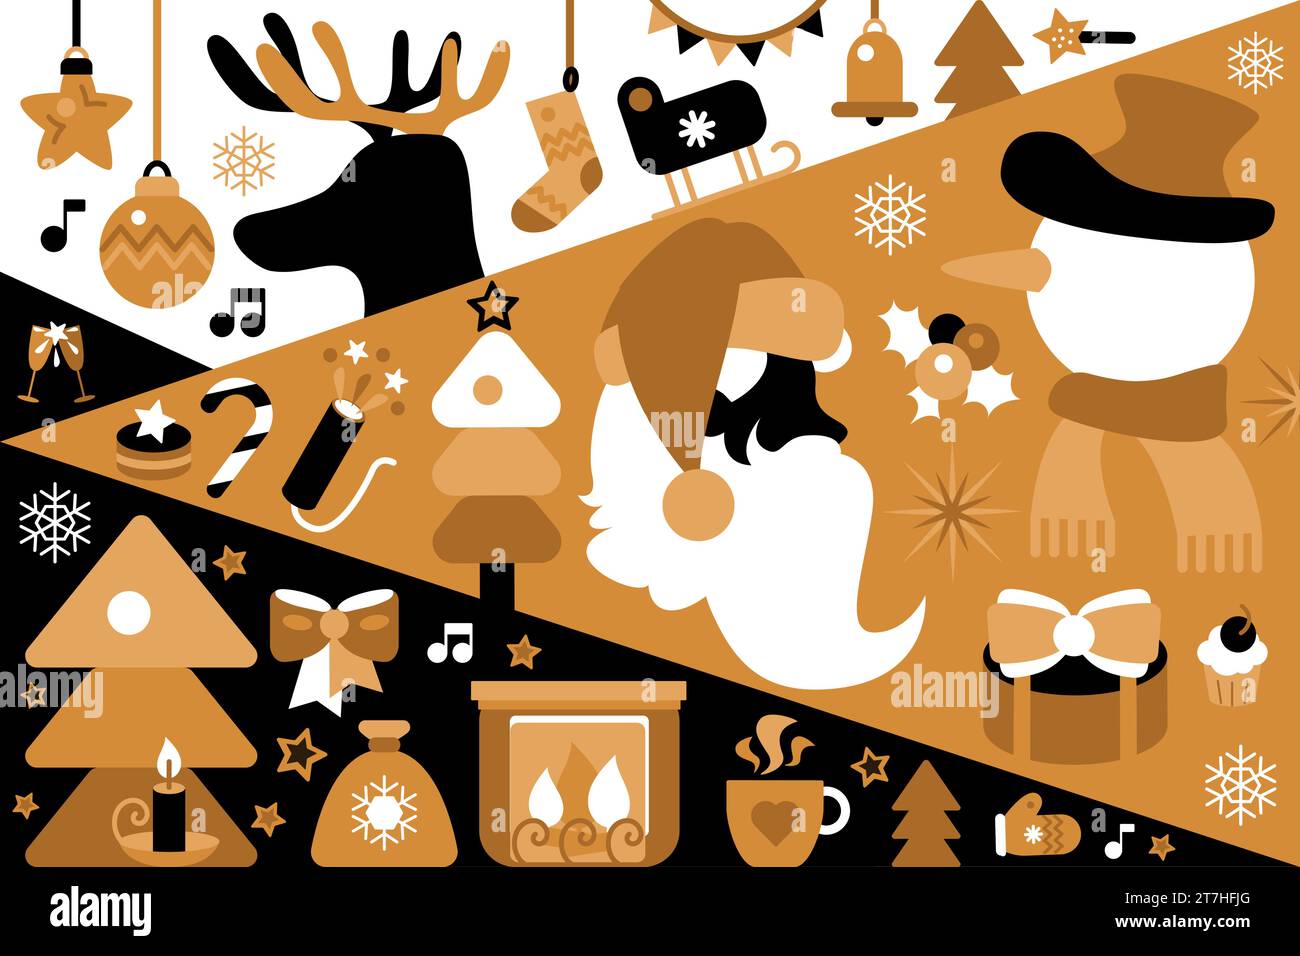 Goldenes Weihnachtsposter in Boho-Farben mit Weihnachtsmann, Schneemann, Hirsch, Weihnachtsbaumspielzeug, Feuerwerkskörper, Geschenke, Überraschungen. Stock Vektor